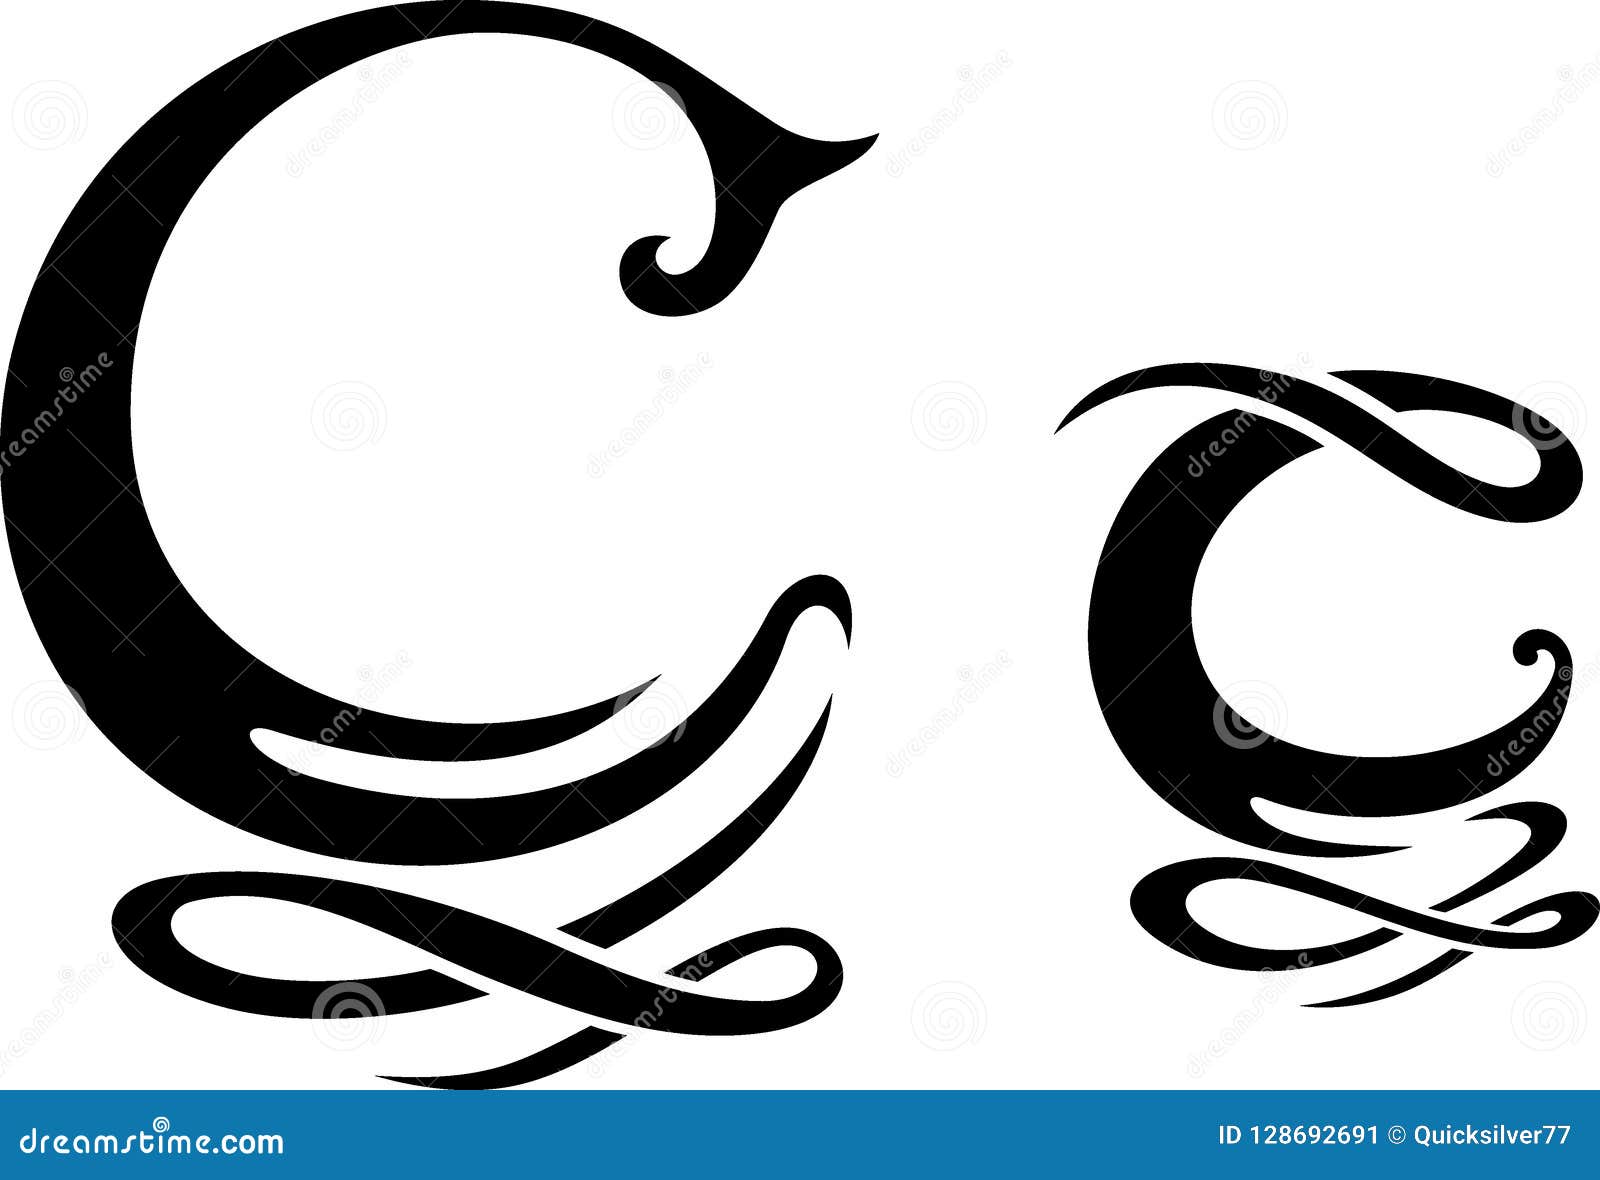 Letter C Monogram stock vector. Illustration of lettering - 128692691